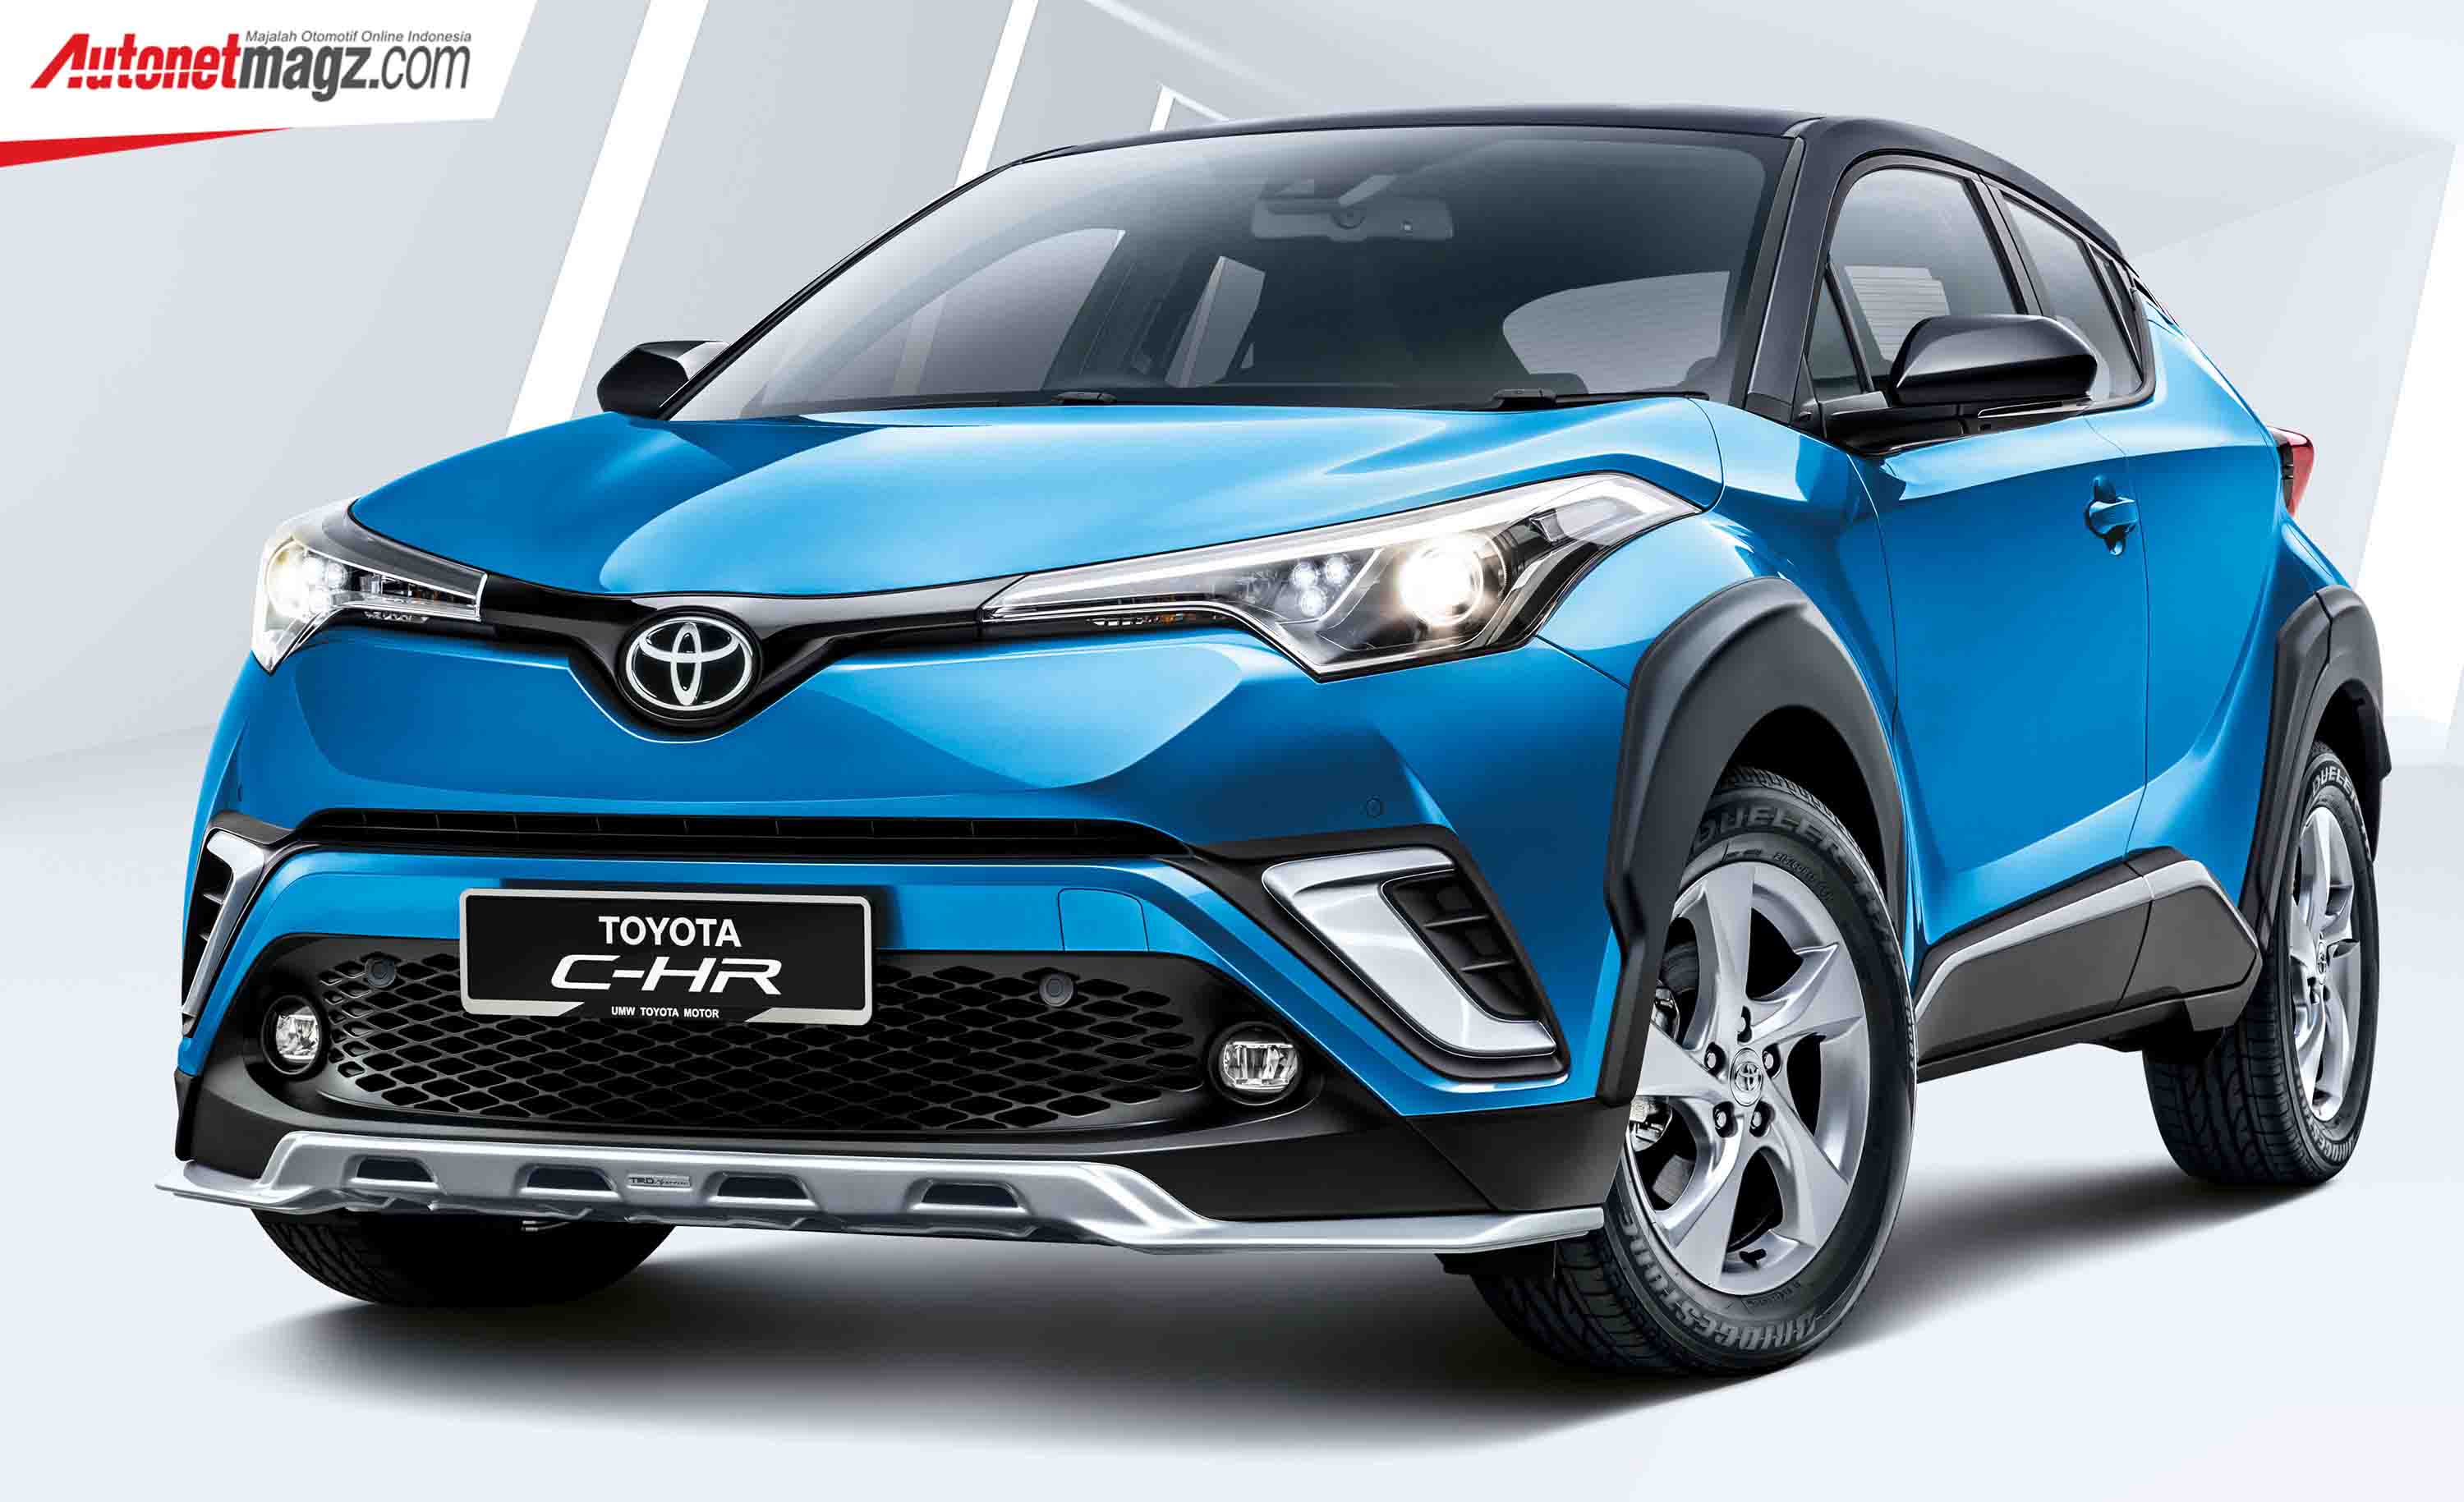 Berita, Toyota C-HR 2019 depan: Toyota C-HR 2019 Rilis di Malaysia Dengan Aksesoris & Warna Baru, Harga 500 Jutaan!